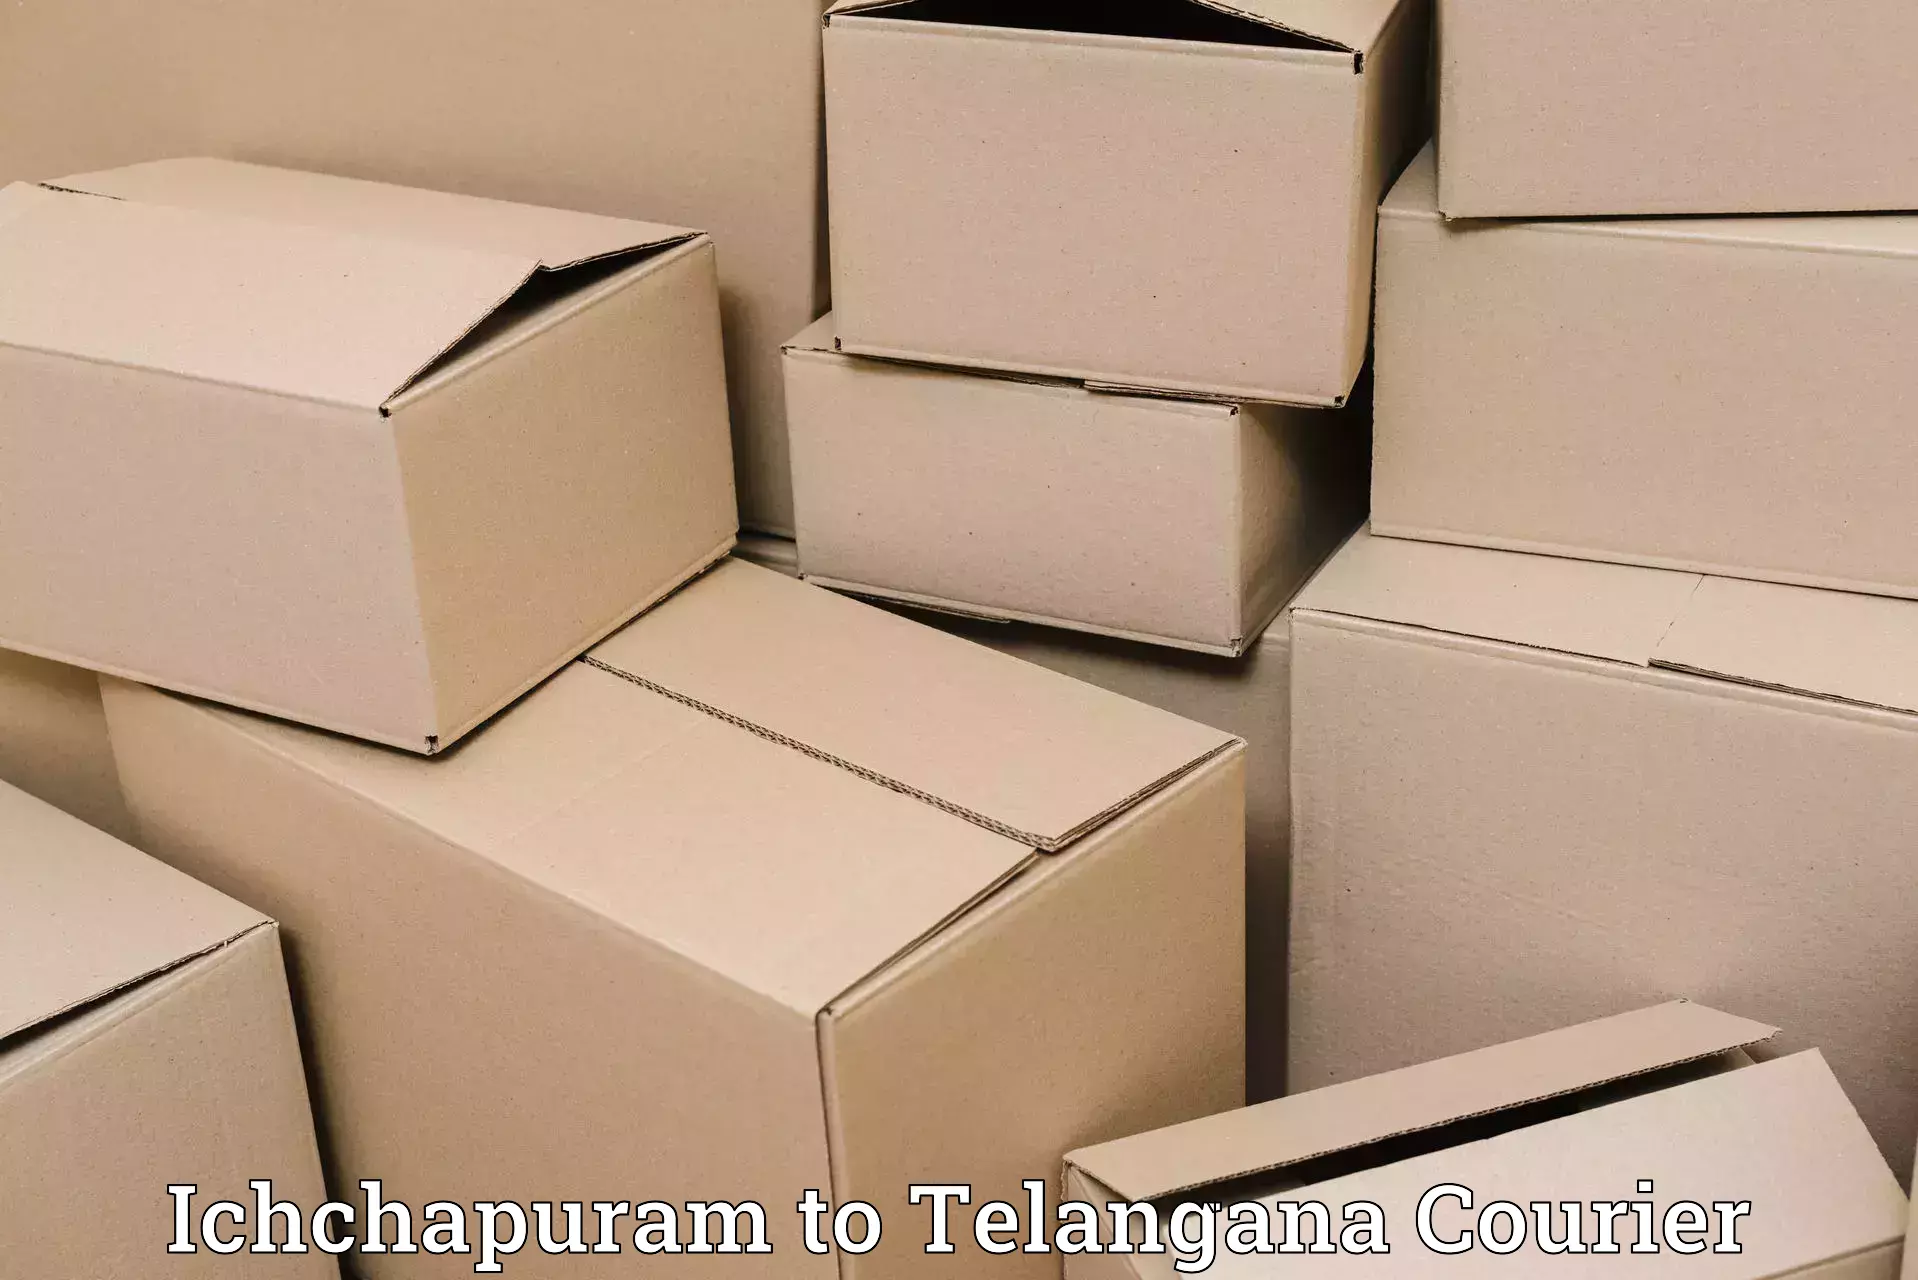 Efficient courier operations Ichchapuram to Nellikuduru